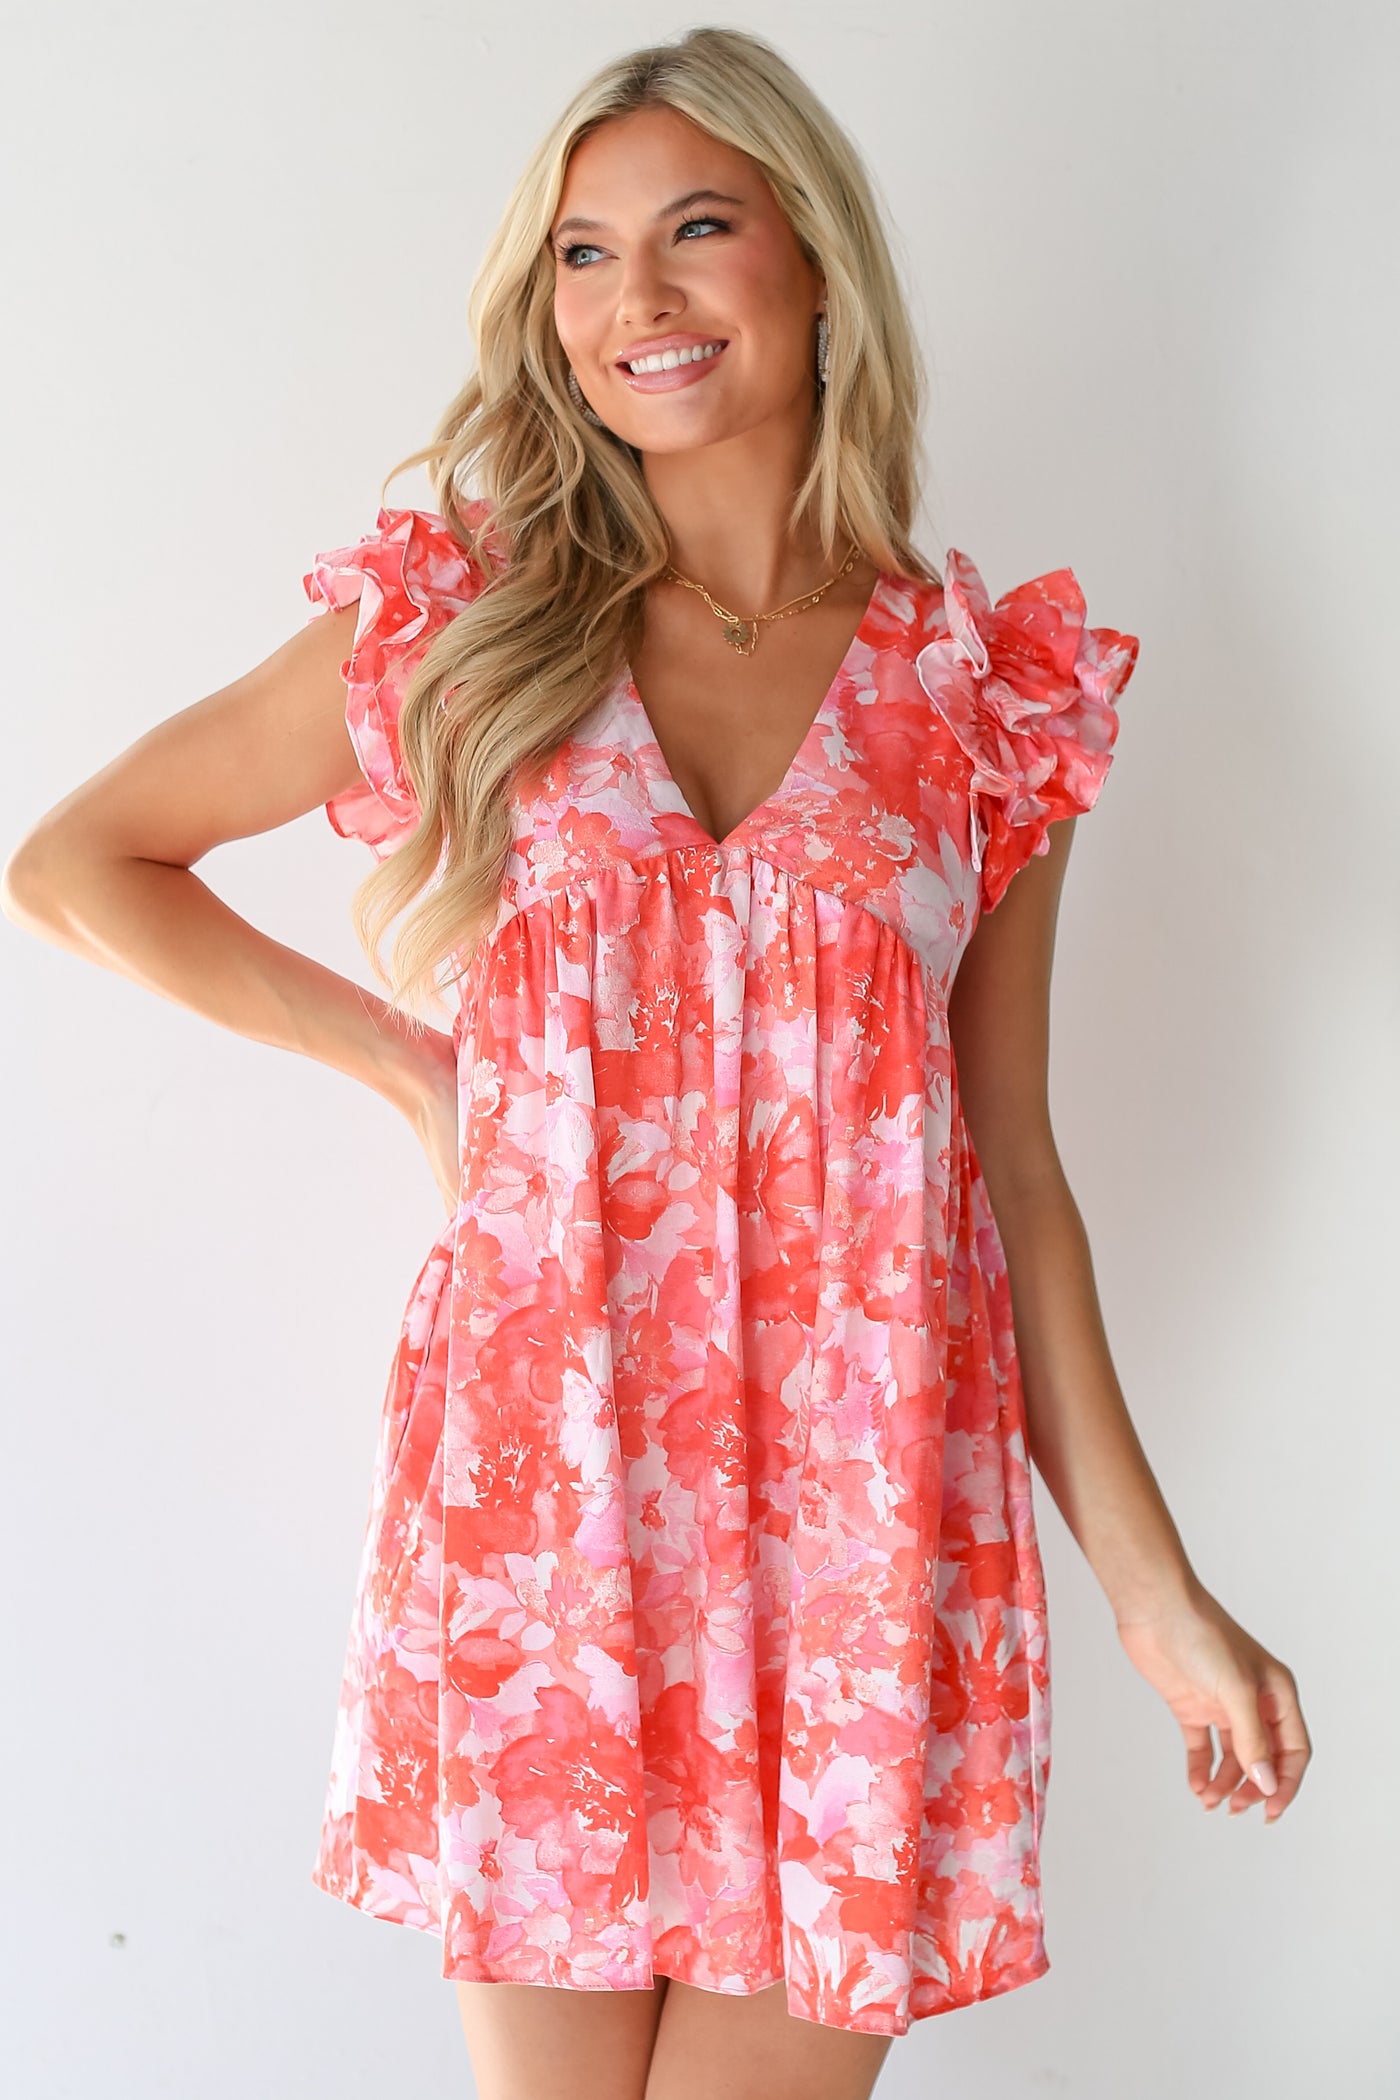 pink Floral Romper Dress on dress up model